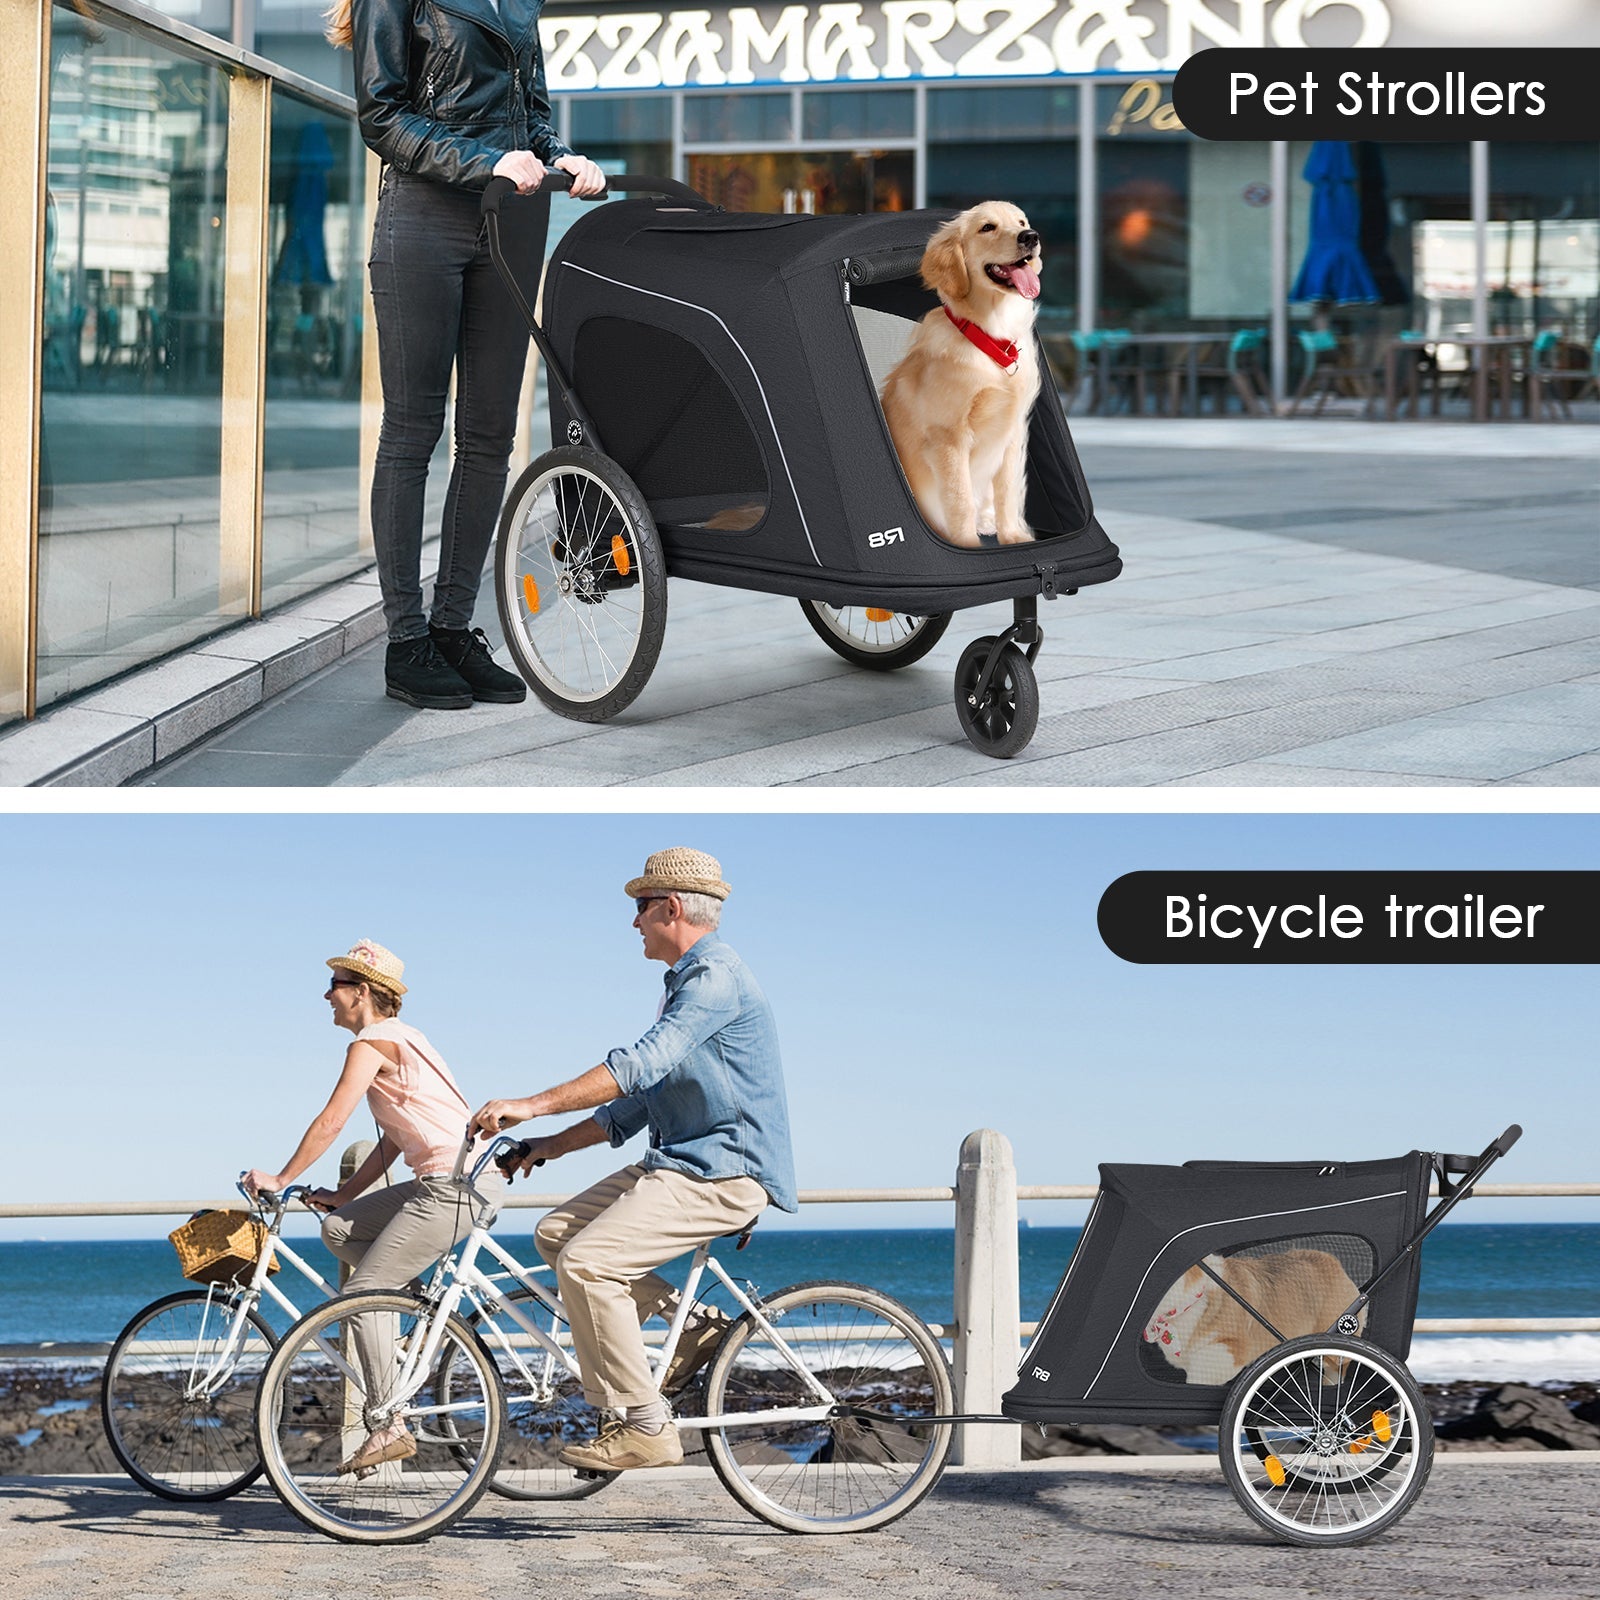 R8 Foldable Pet Stroller - Outlet Deal Item